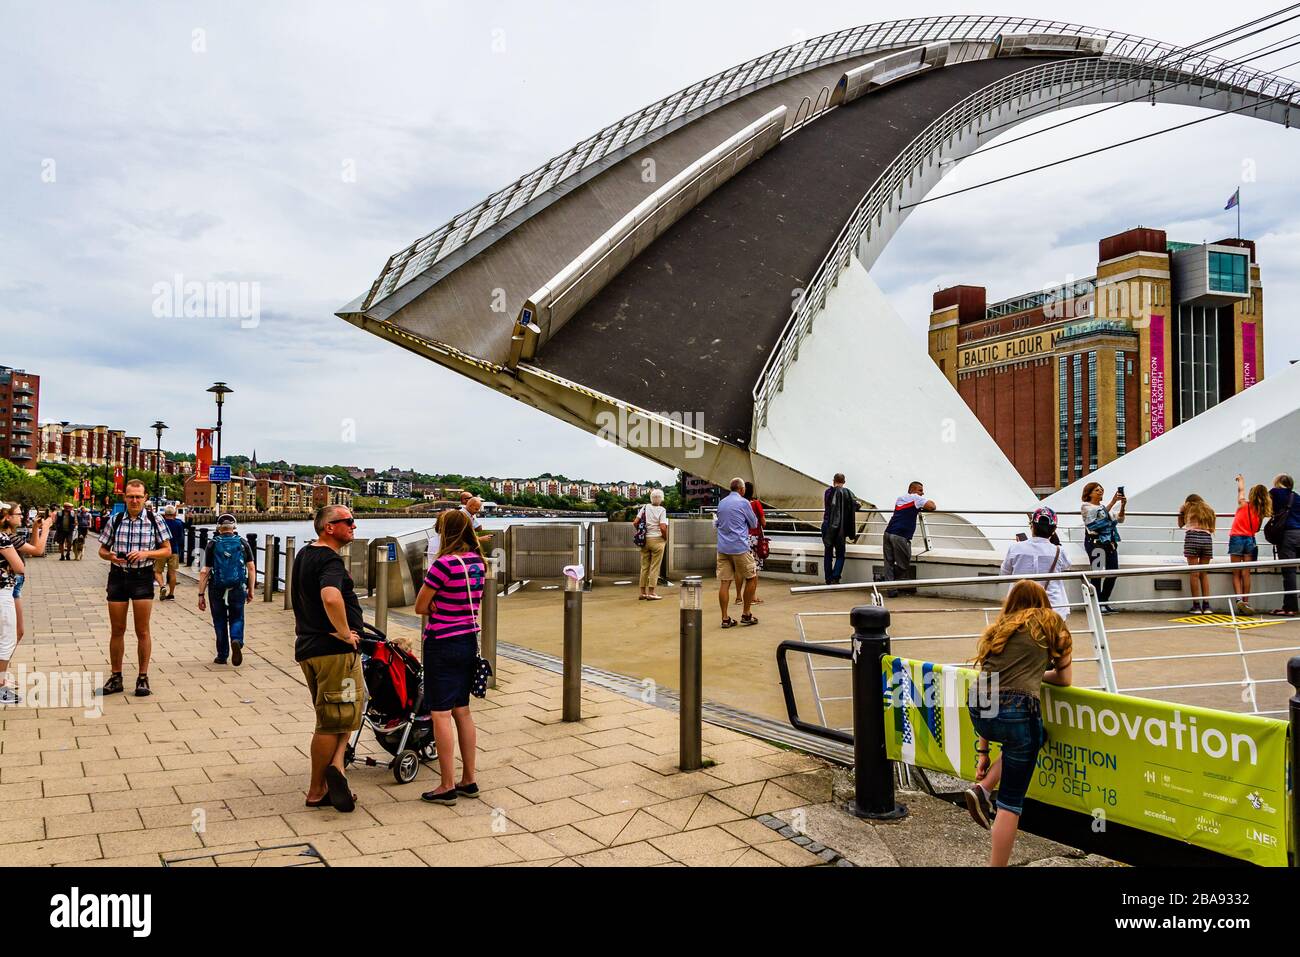 Gateshead Millennium Bridge, un ponte inclinato, sollevato per far passare le barche mentre la gente aspetta e guarda. Newcastle upon Tyne, Regno Unito. Agosto 2018. Foto Stock